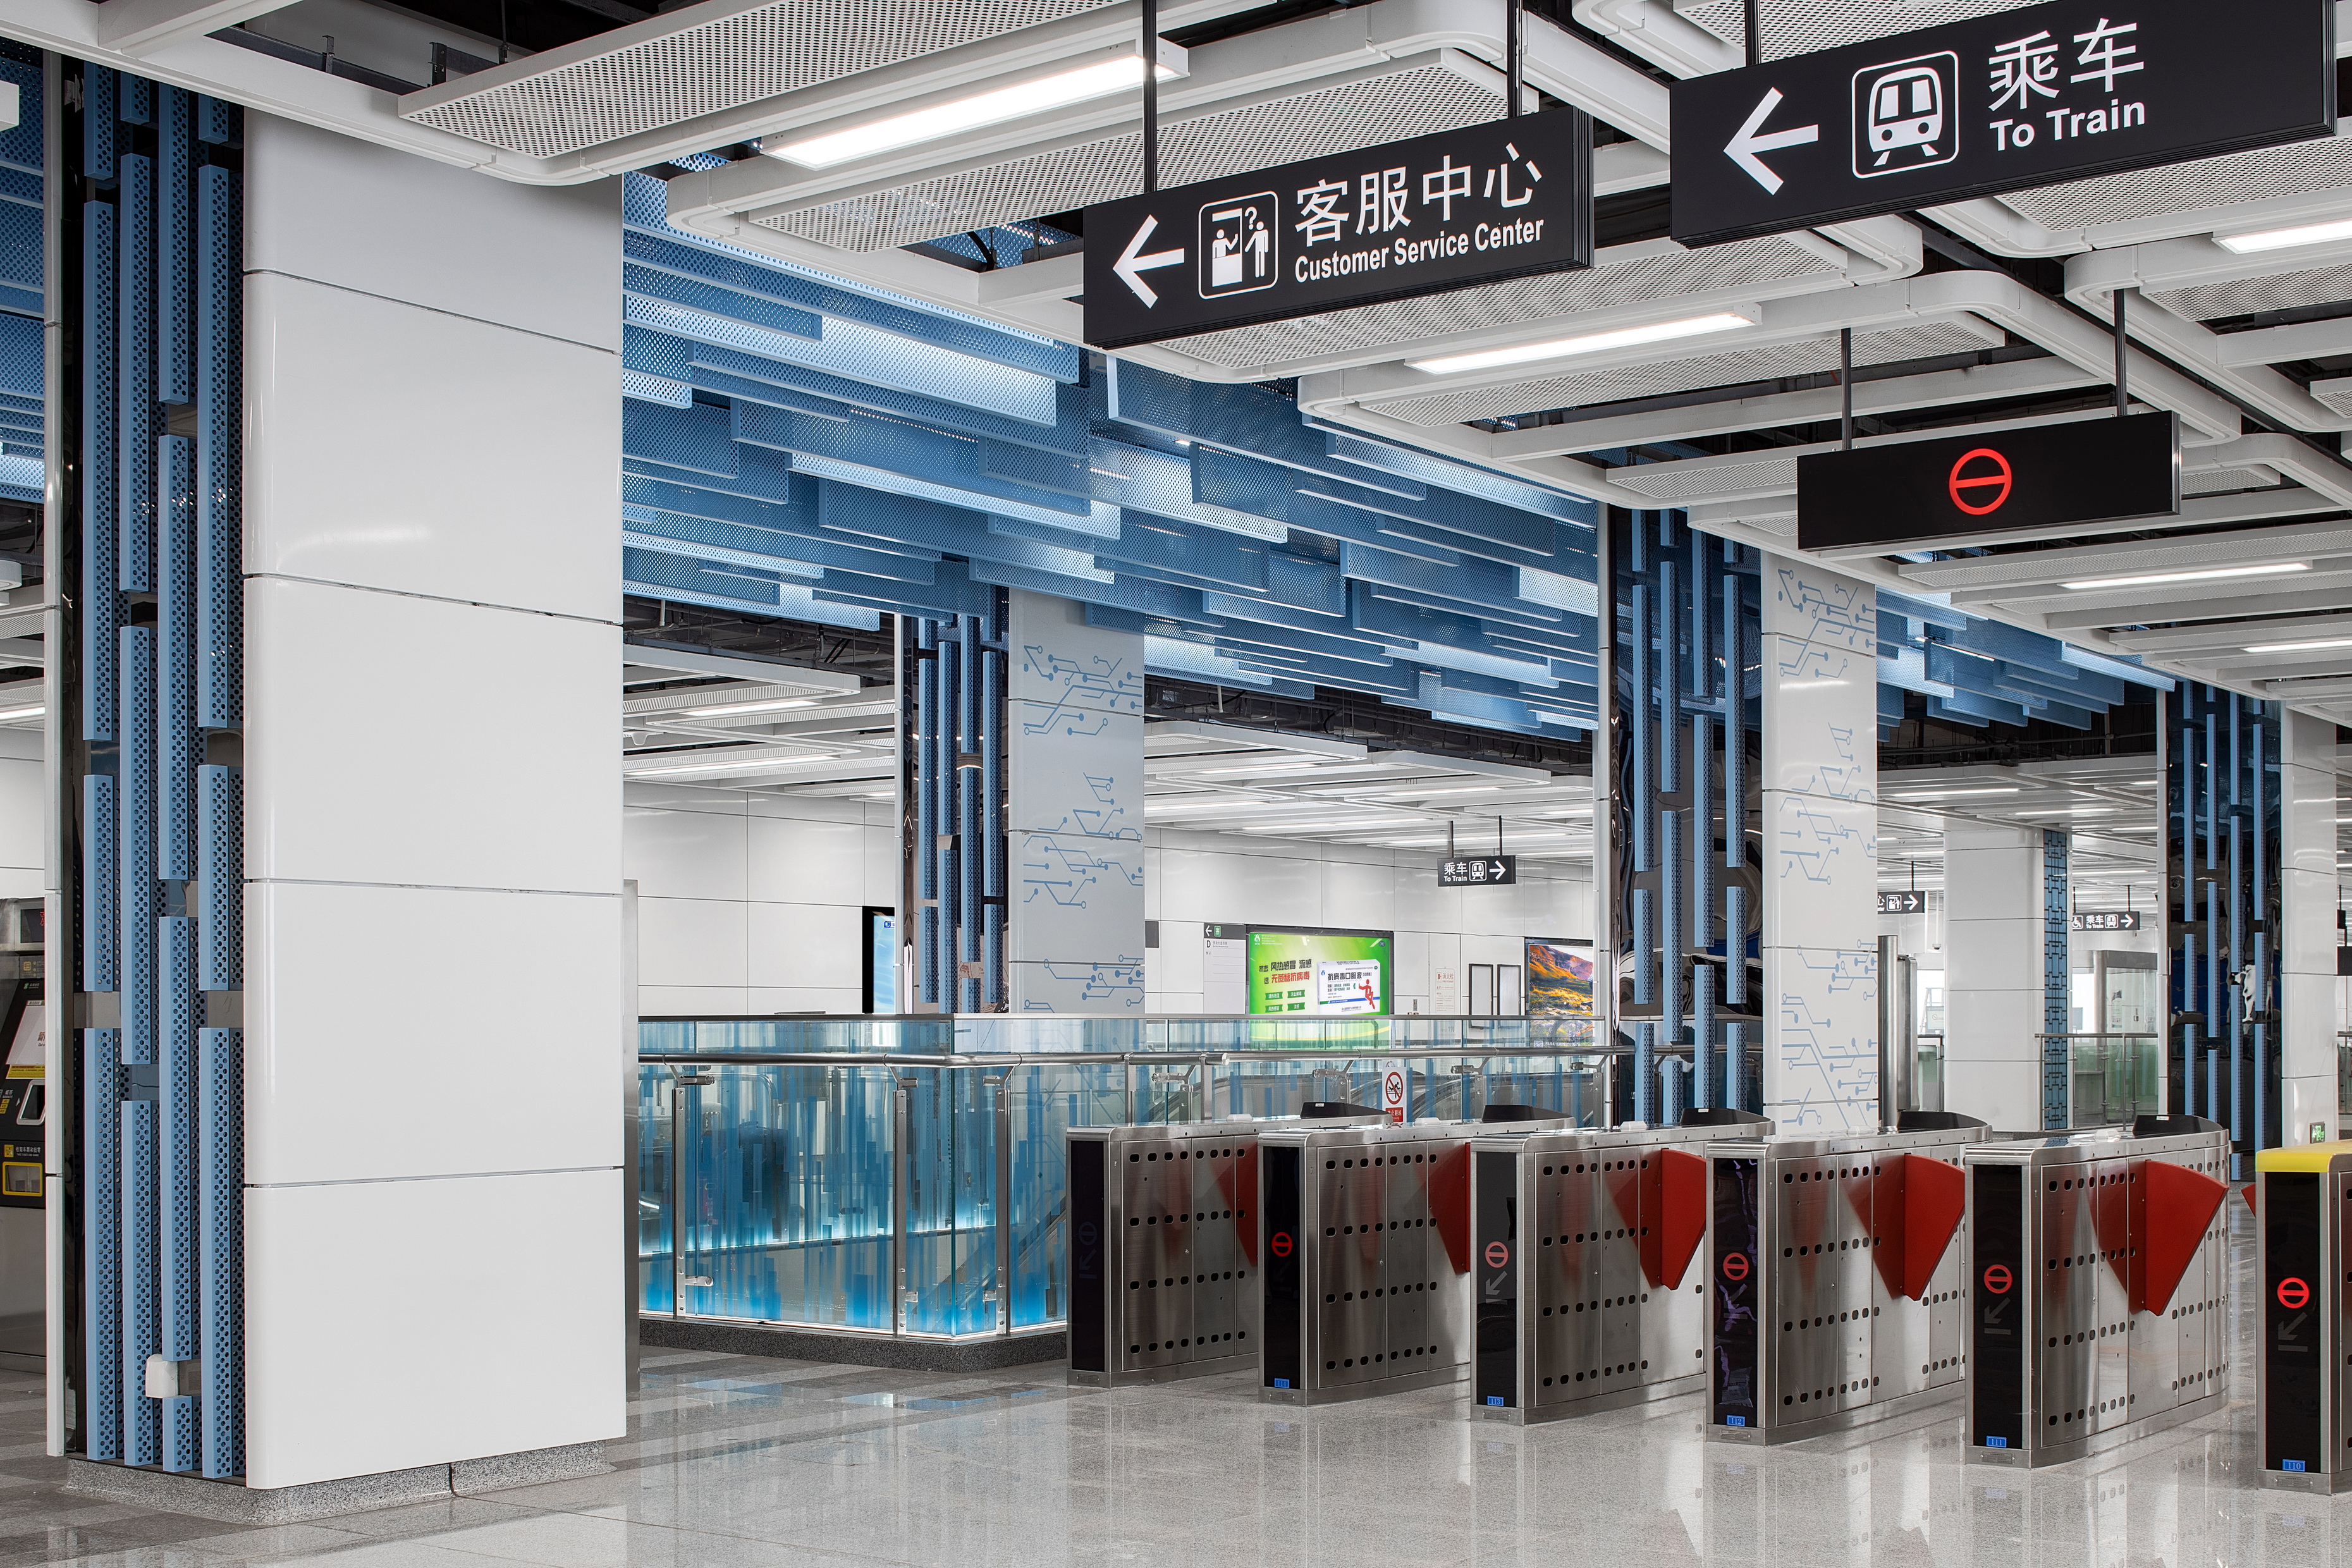 深圳市轨道交通九号线西延线工程车站装修施工图设计